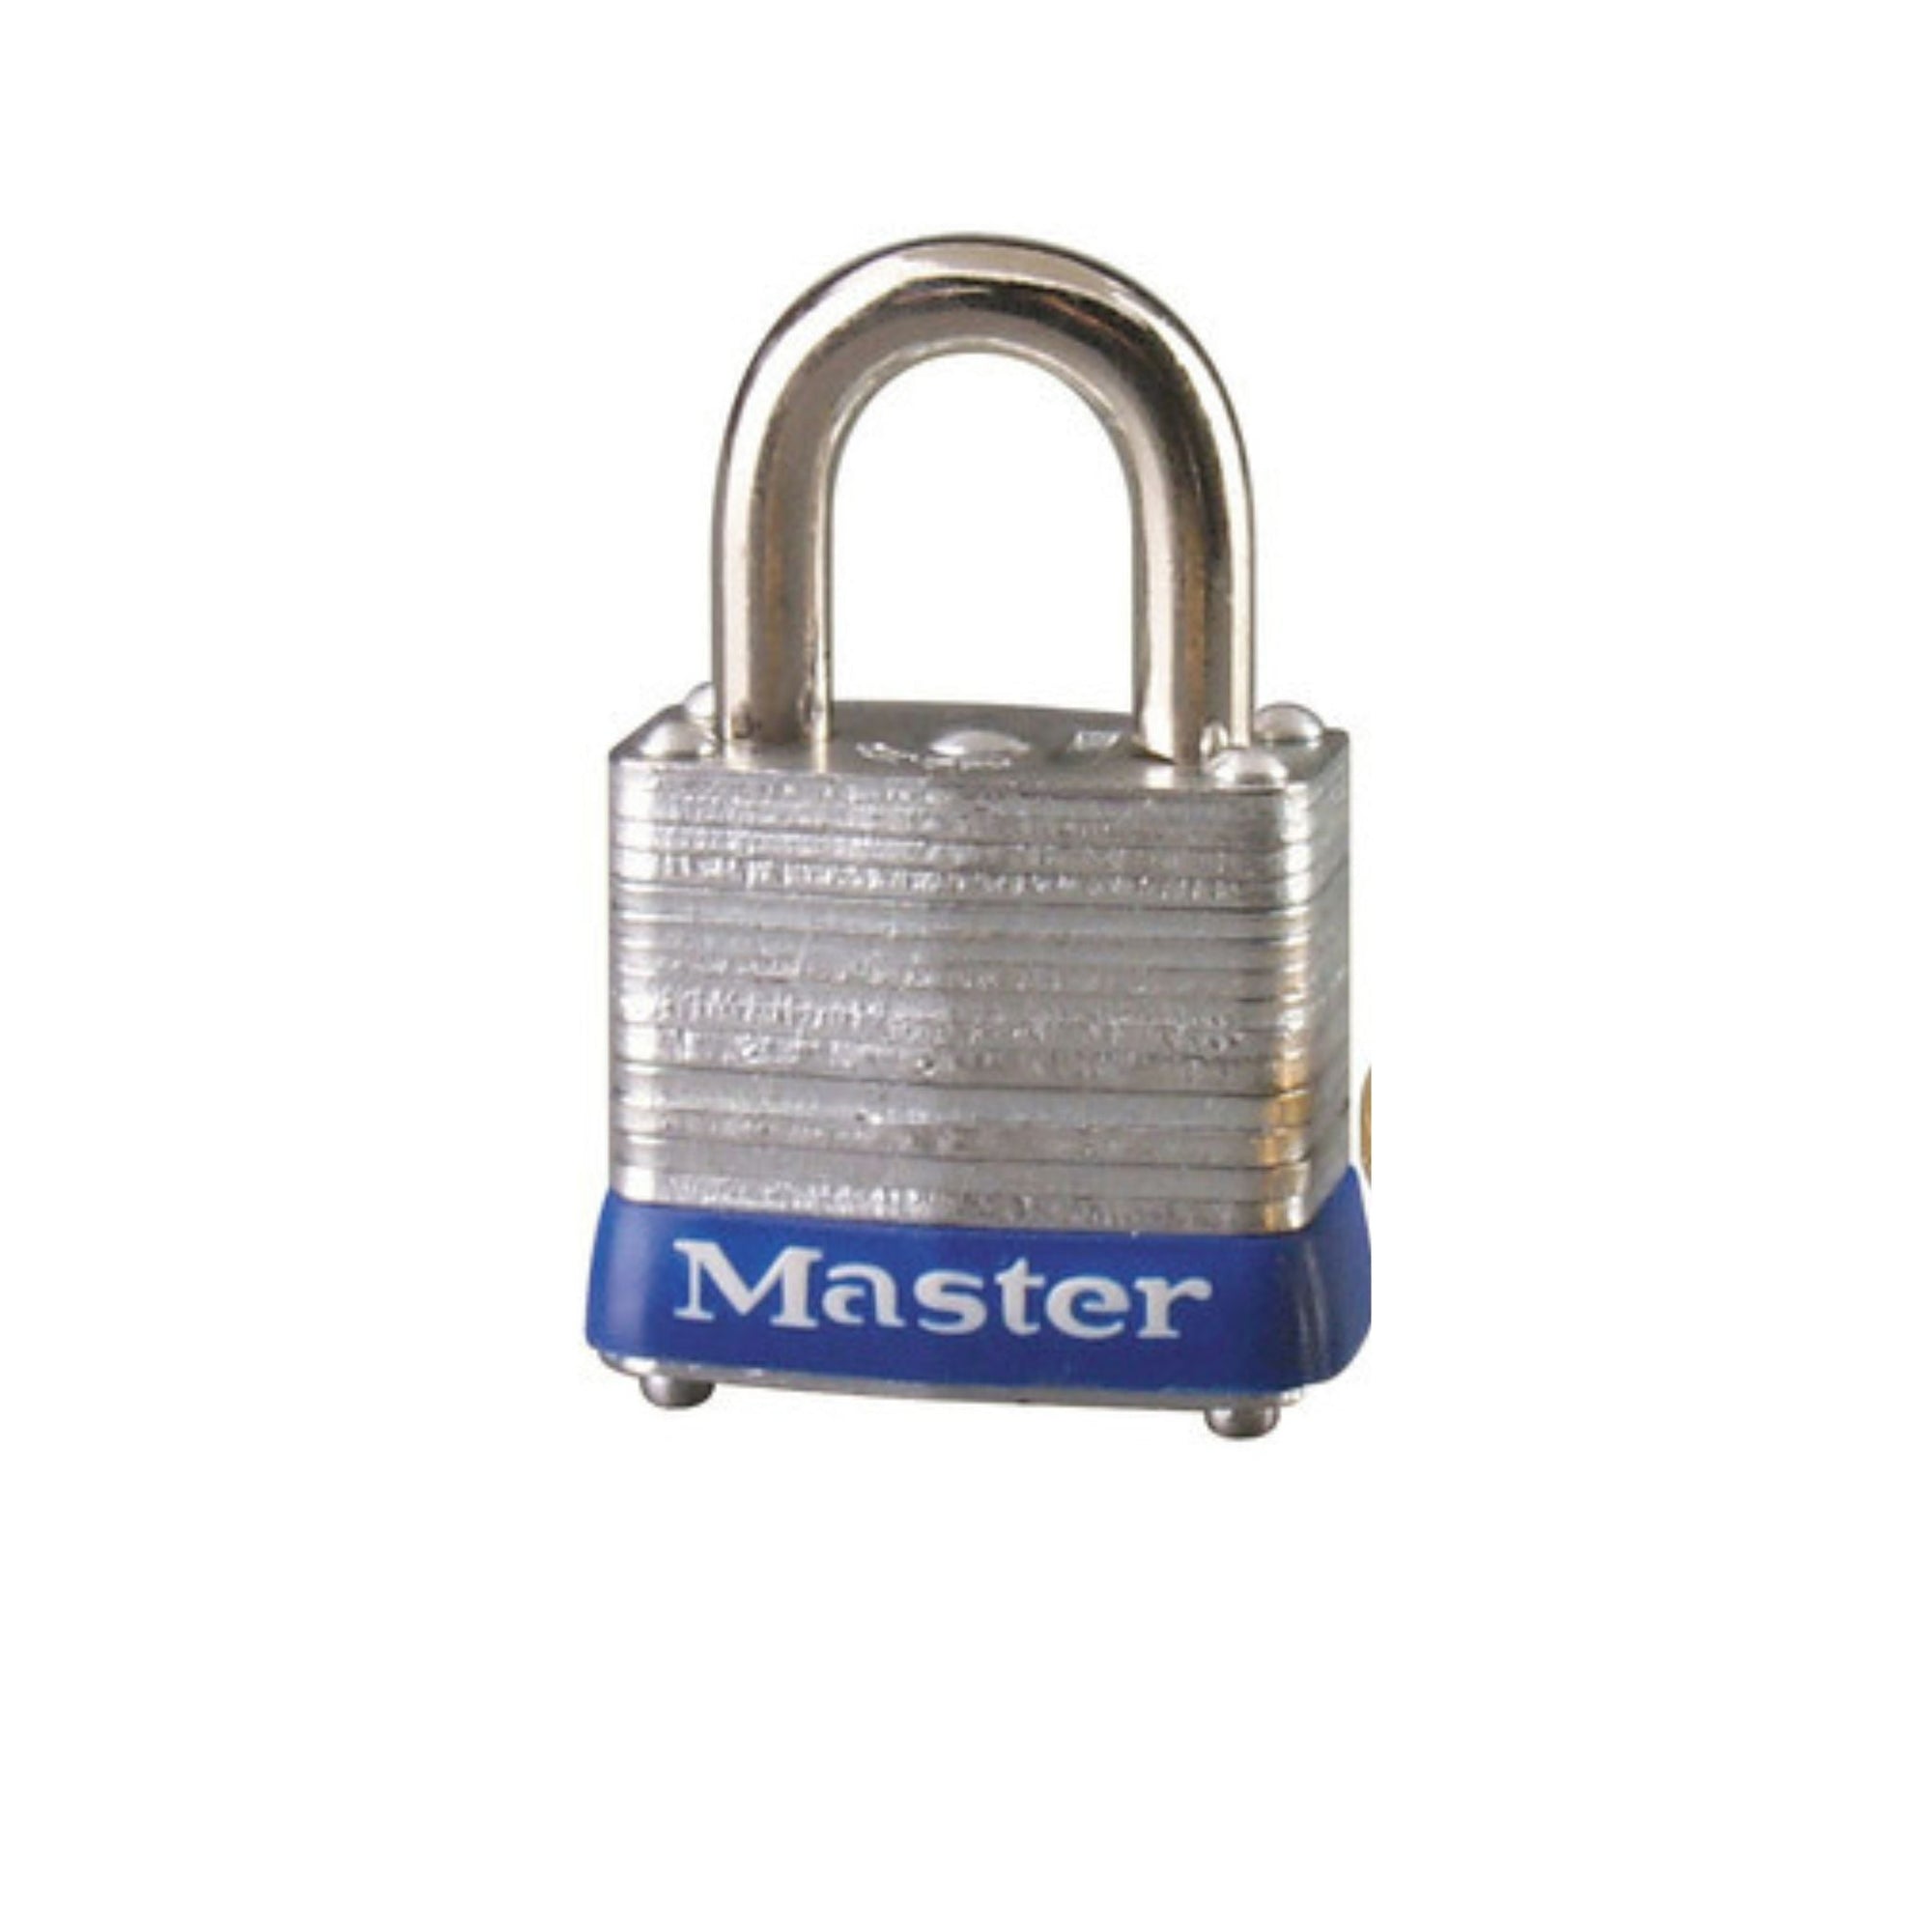 Master Lock 7KA P116 Lock Laminated steel No. 7 Series Padlock Keyed to Match Existing Key Number KAP116 - The Lock Source